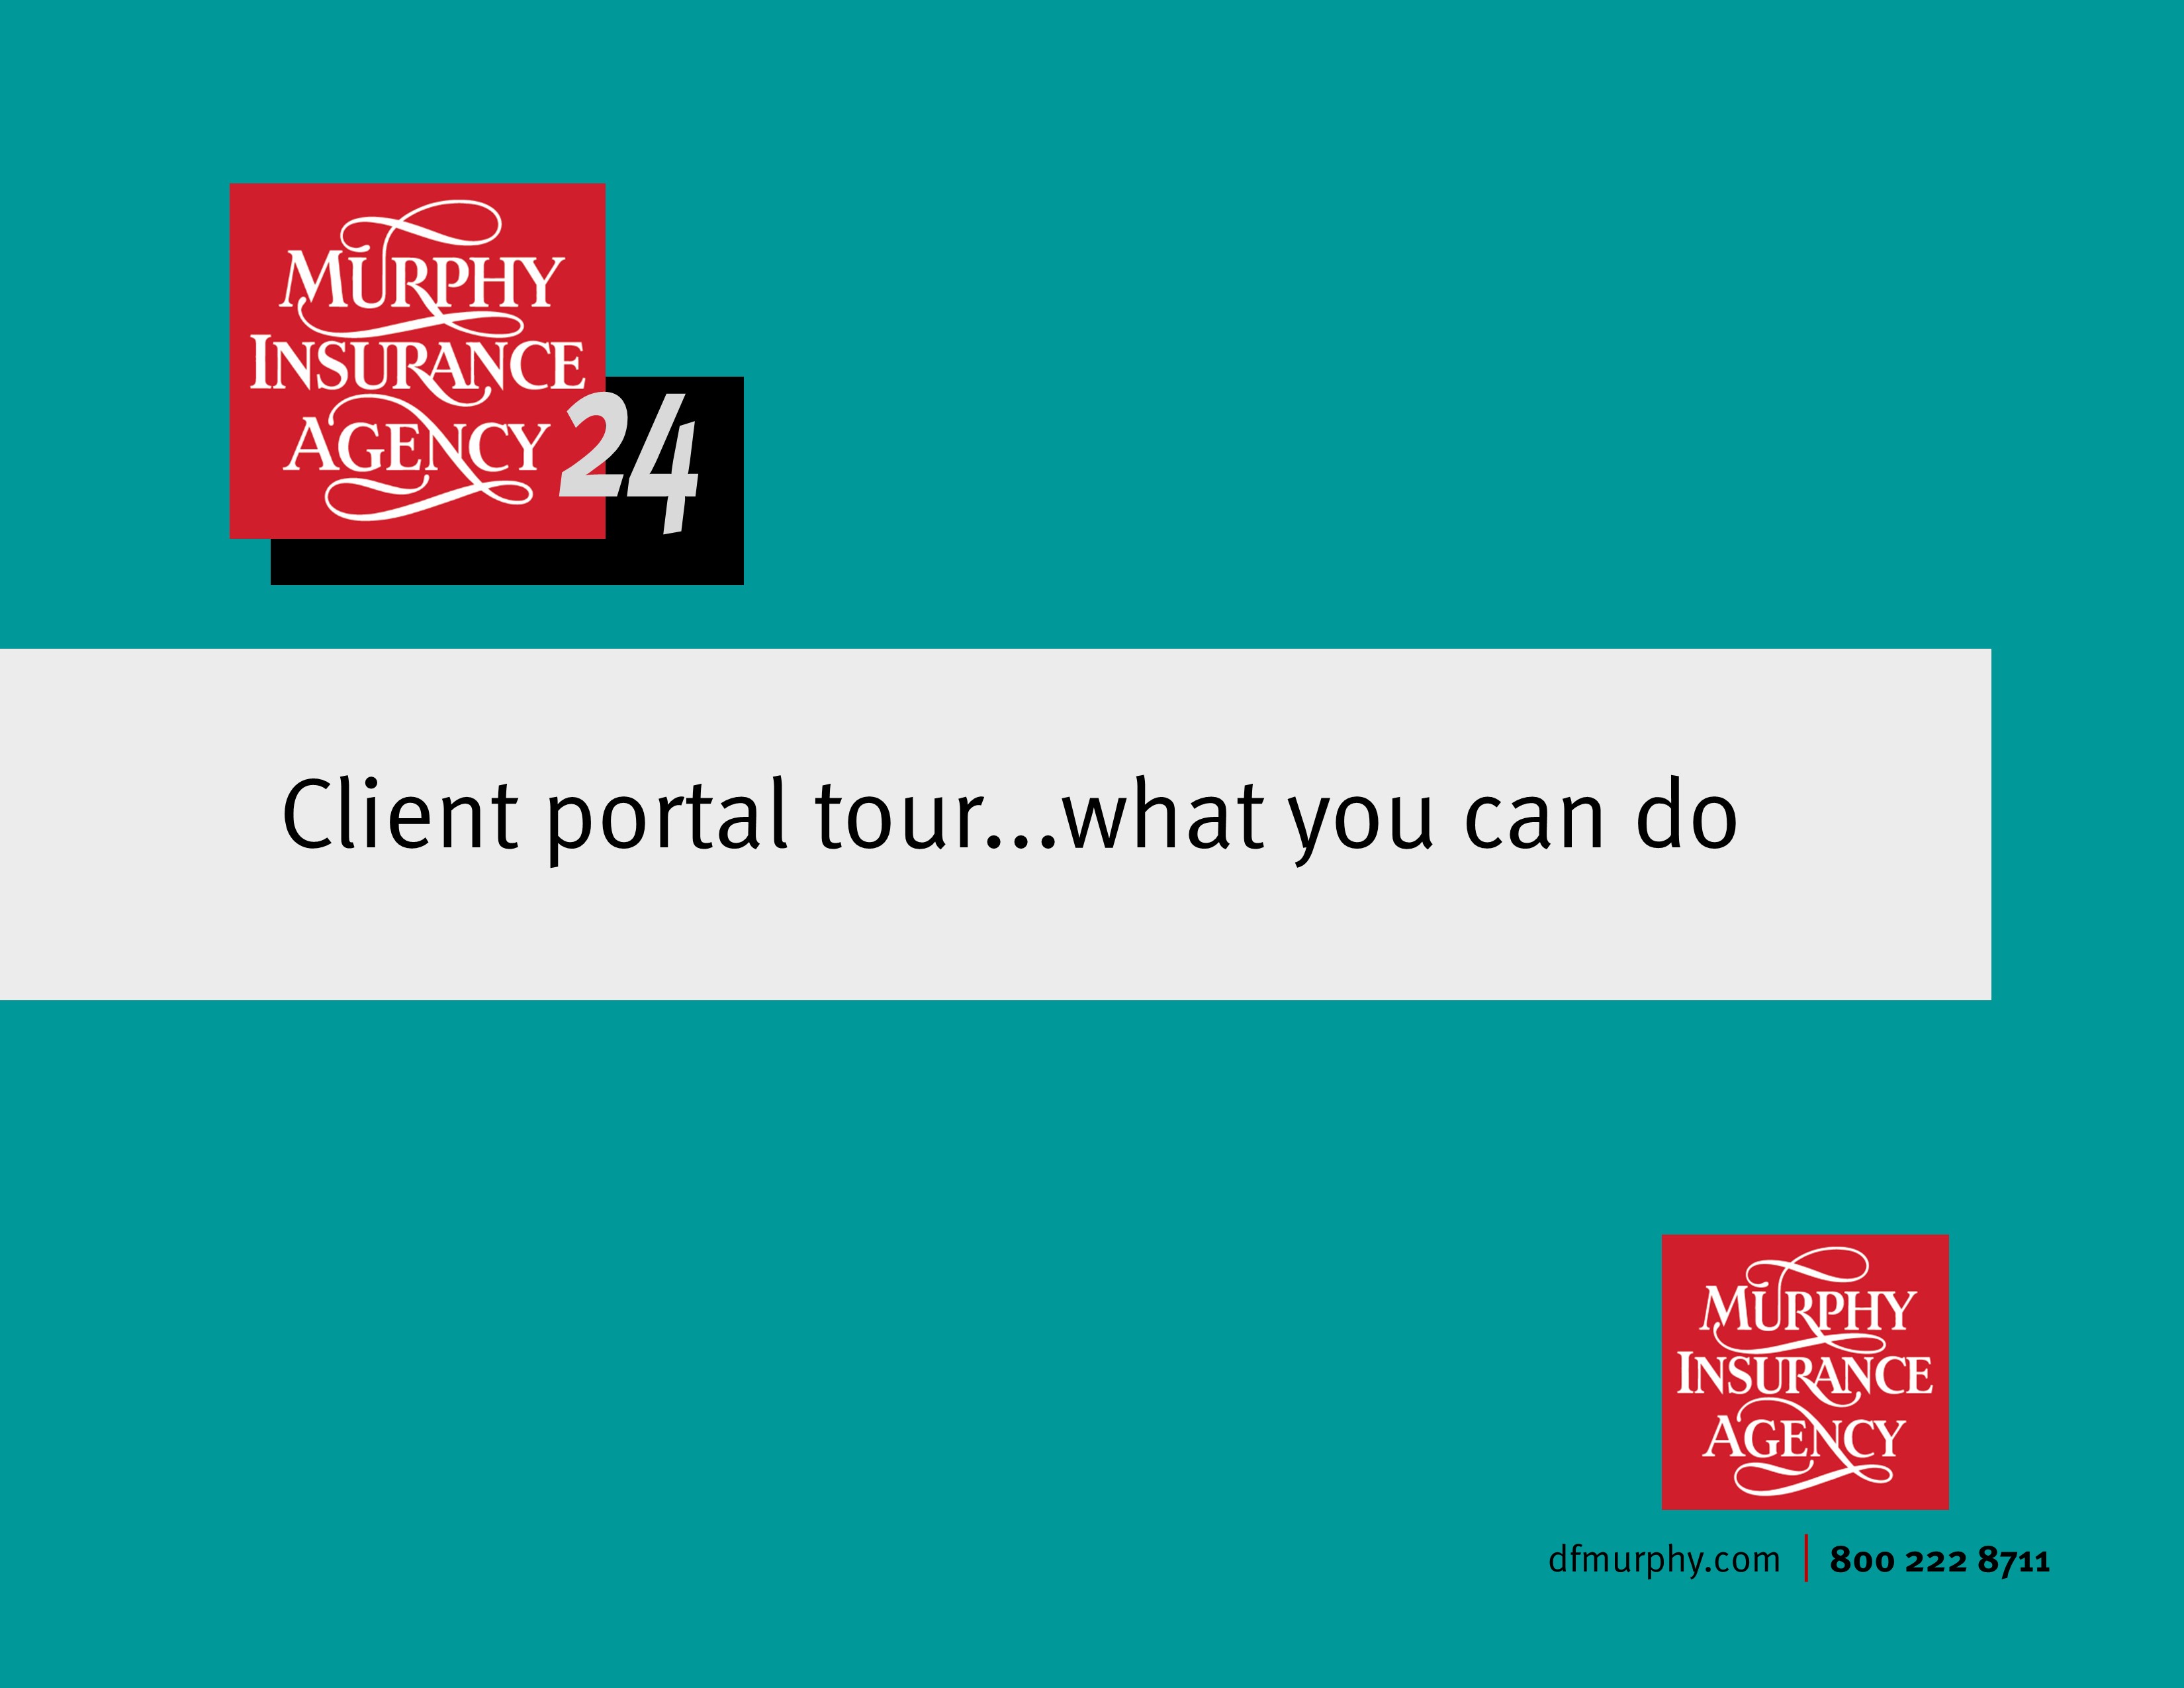 Client Portal Tour Video